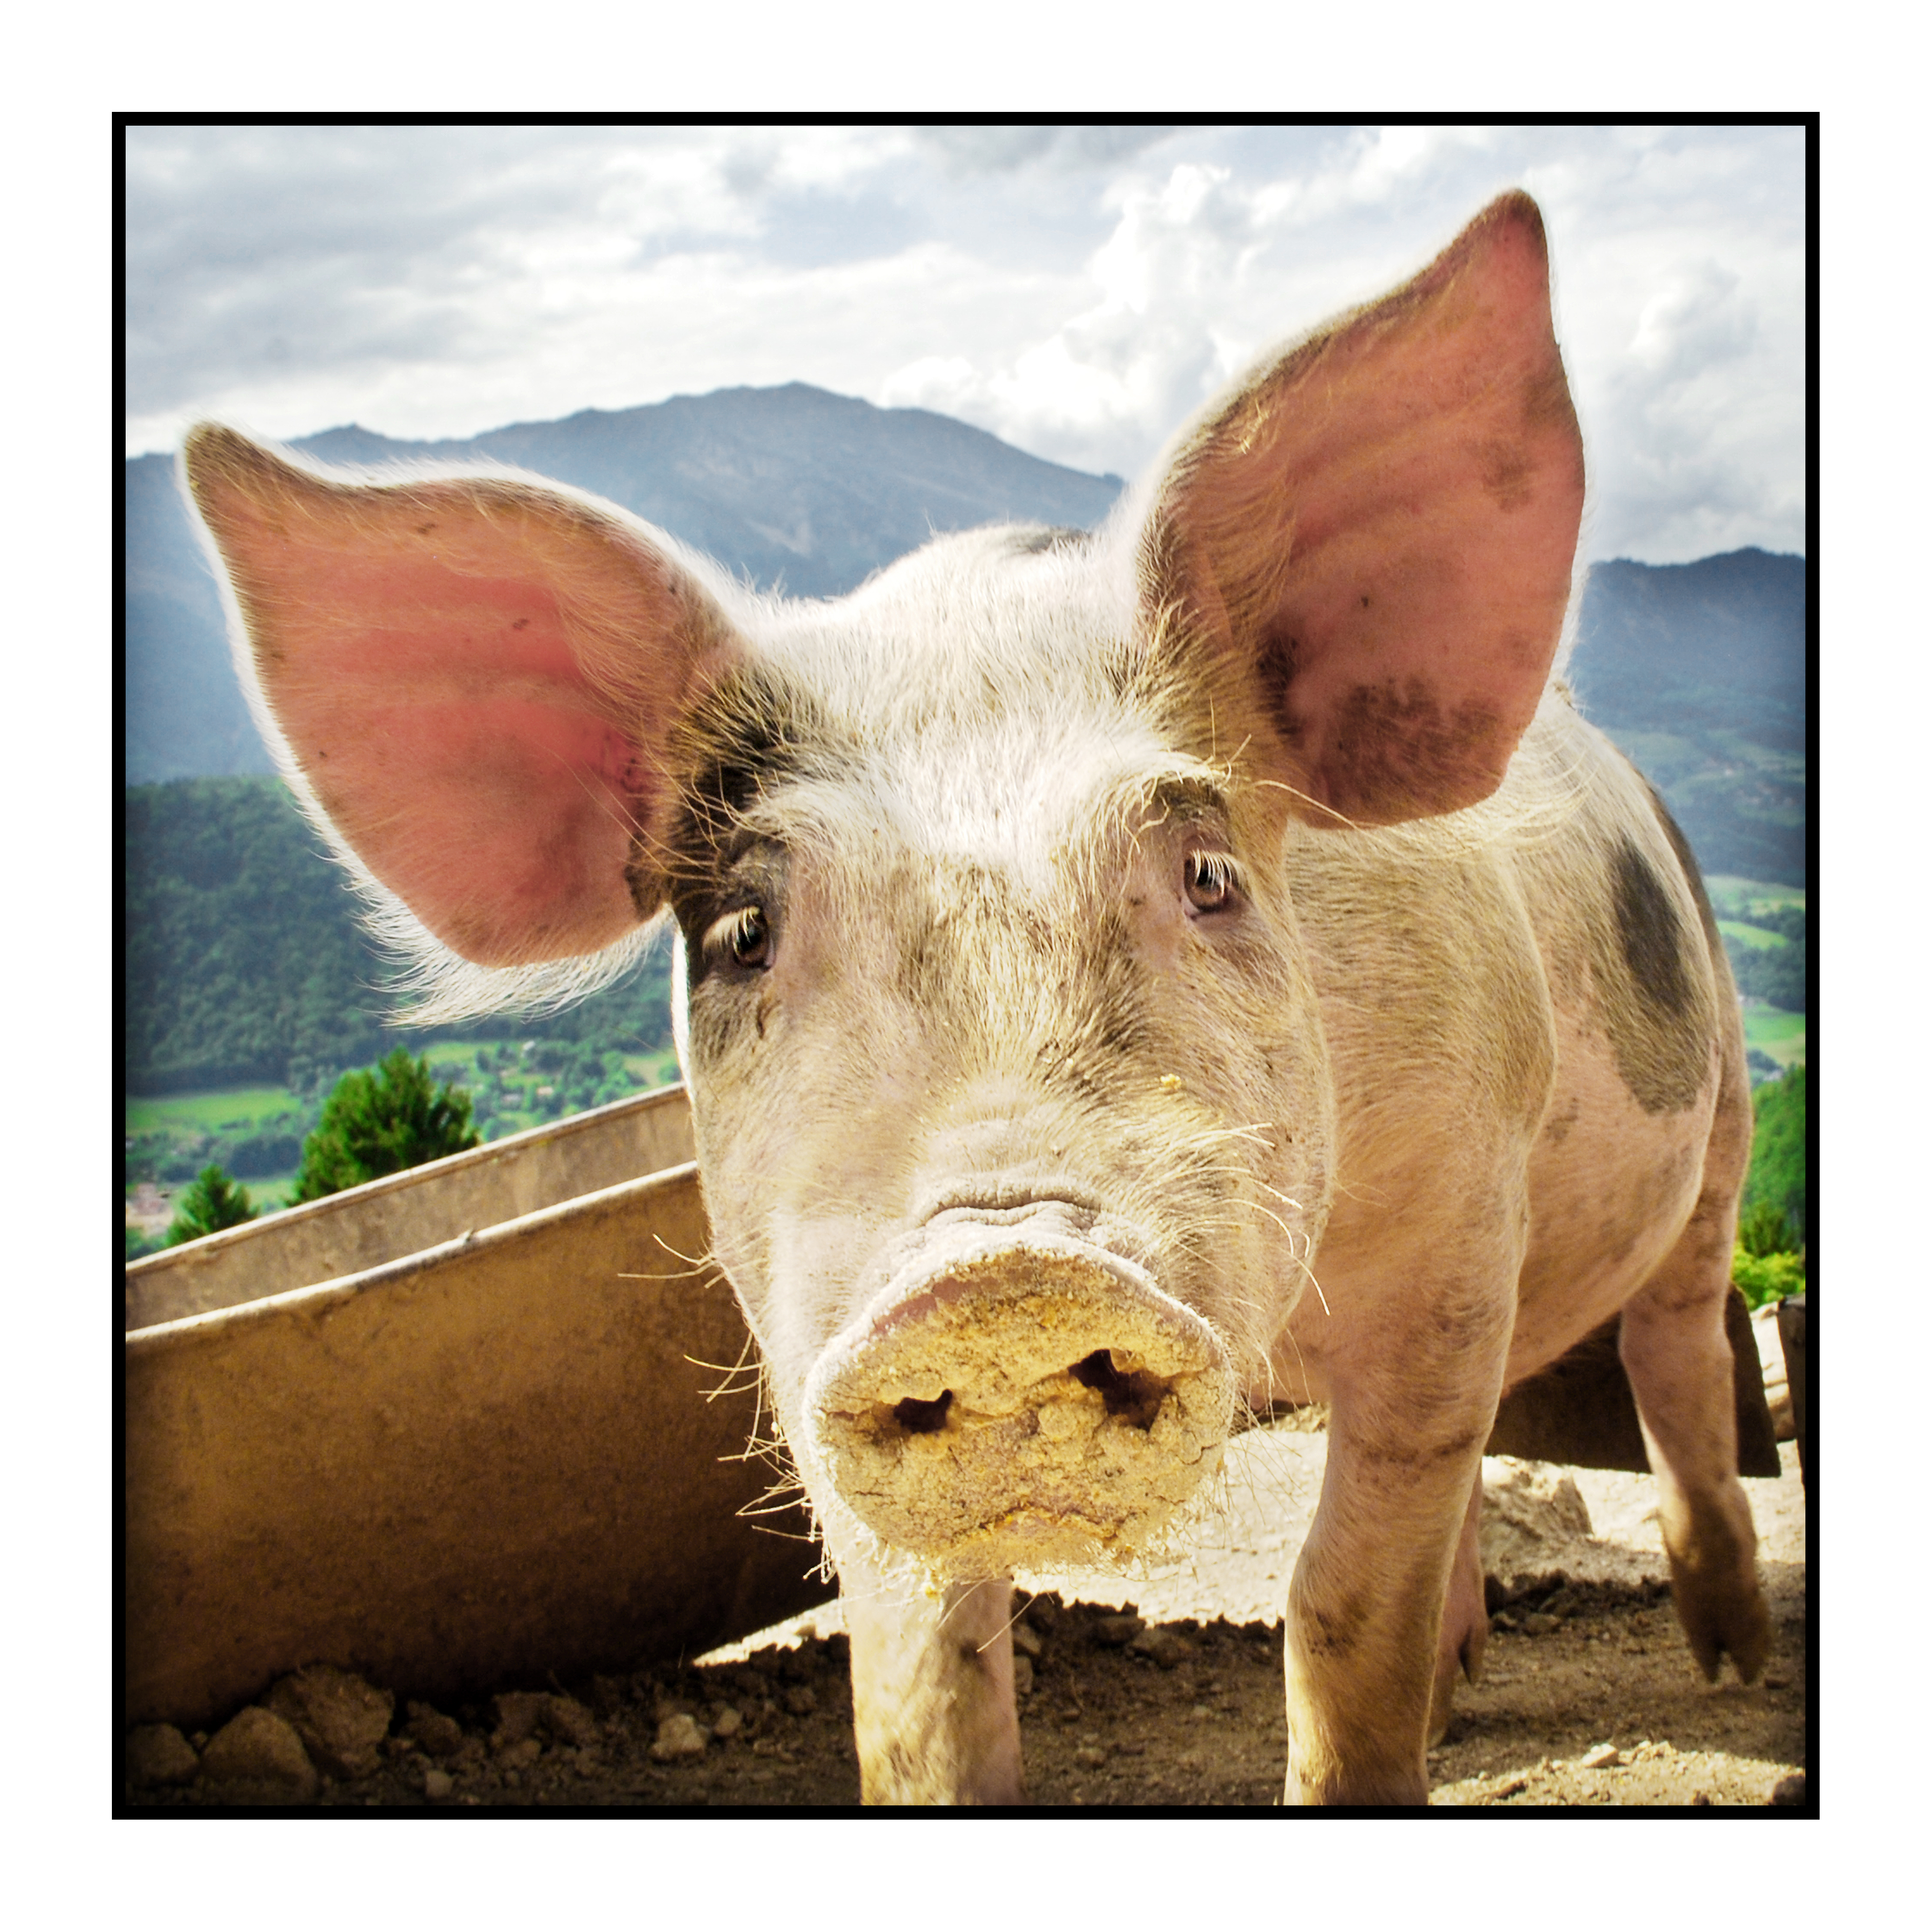 porc à la ferme-fermier-magasin de producteur-gilly sur isère-albertville- terroir-vente directe-savoie